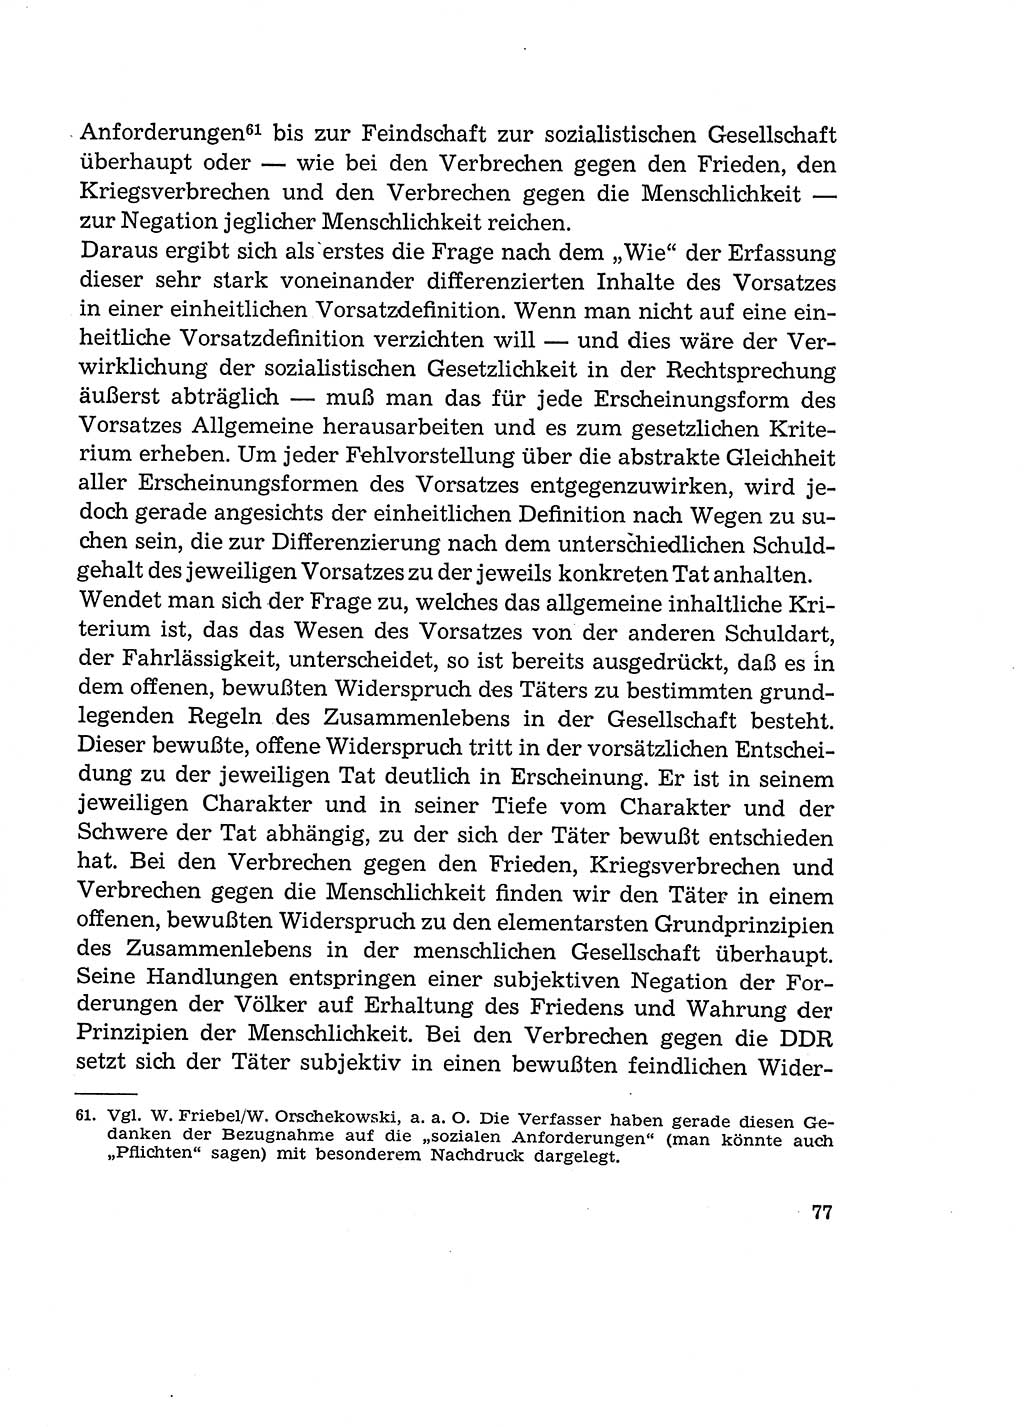 Verantwortung und Schuld im neuen Strafgesetzbuch (StGB) [Deutsche Demokratische Republik (DDR)] 1964, Seite 77 (Verantw. Sch. StGB DDR 1964, S. 77)